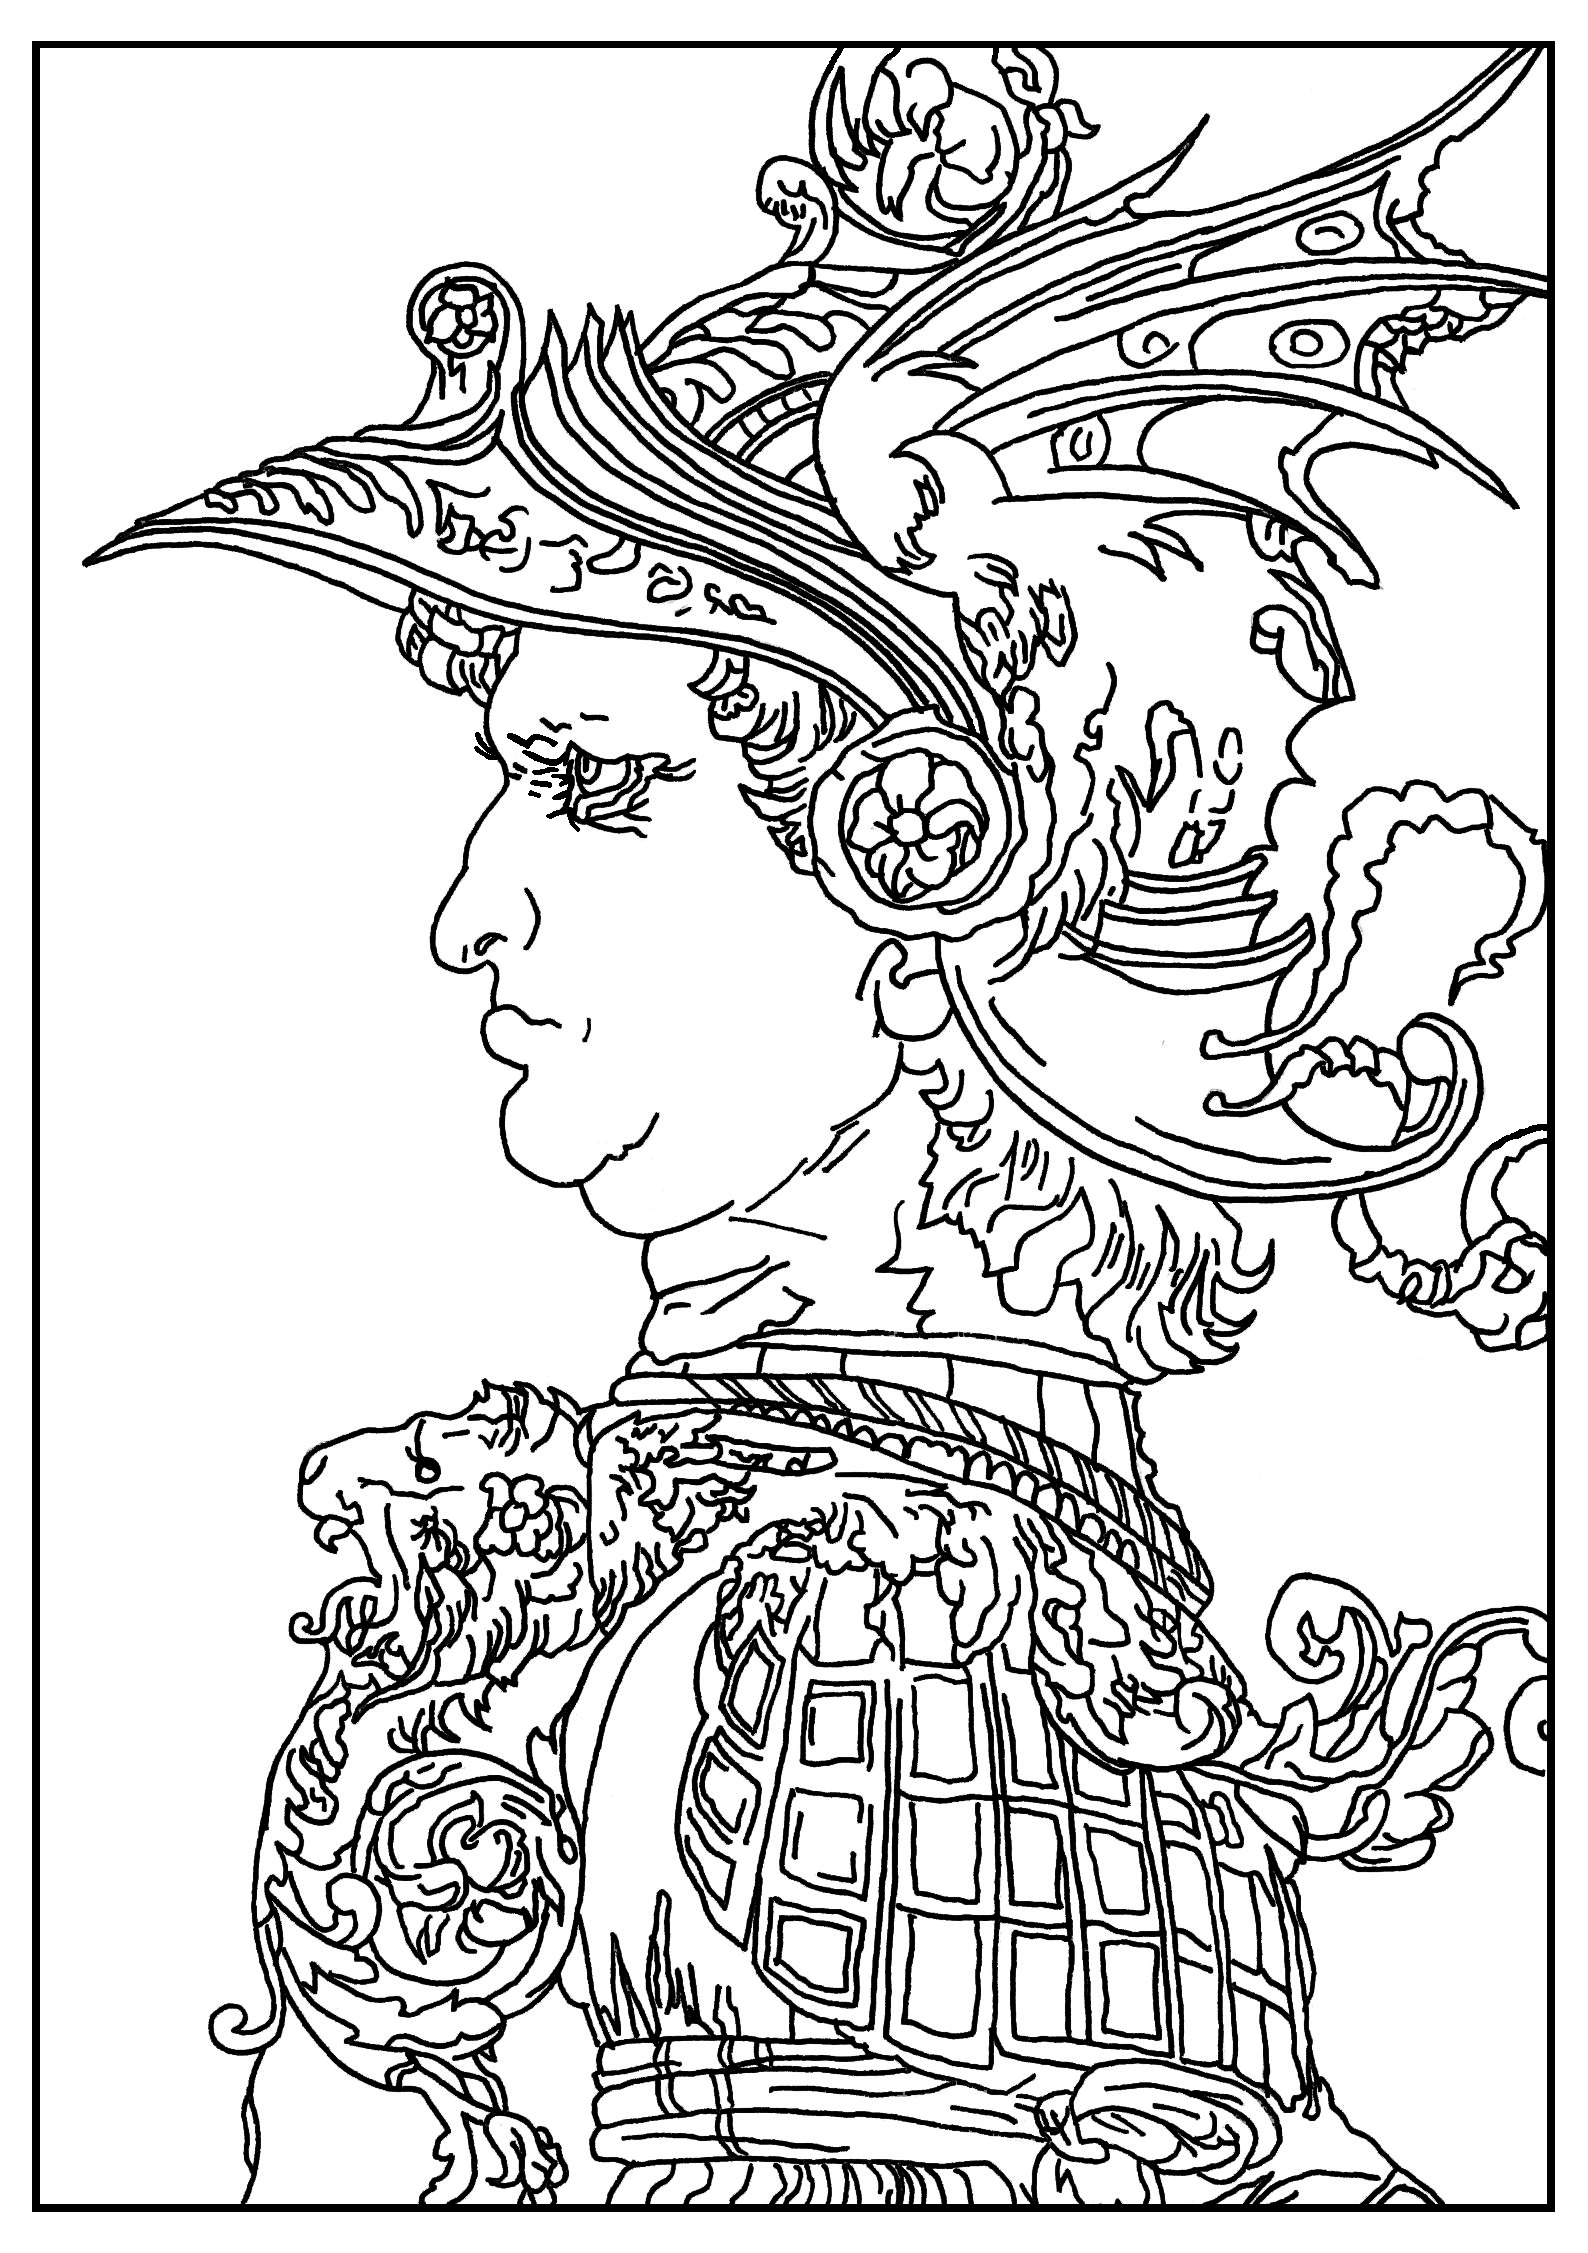 Malvorlage nach einer Zeichnung von Leonardo Da Vinci: Profil eines Kriegers mit Helm (1477)